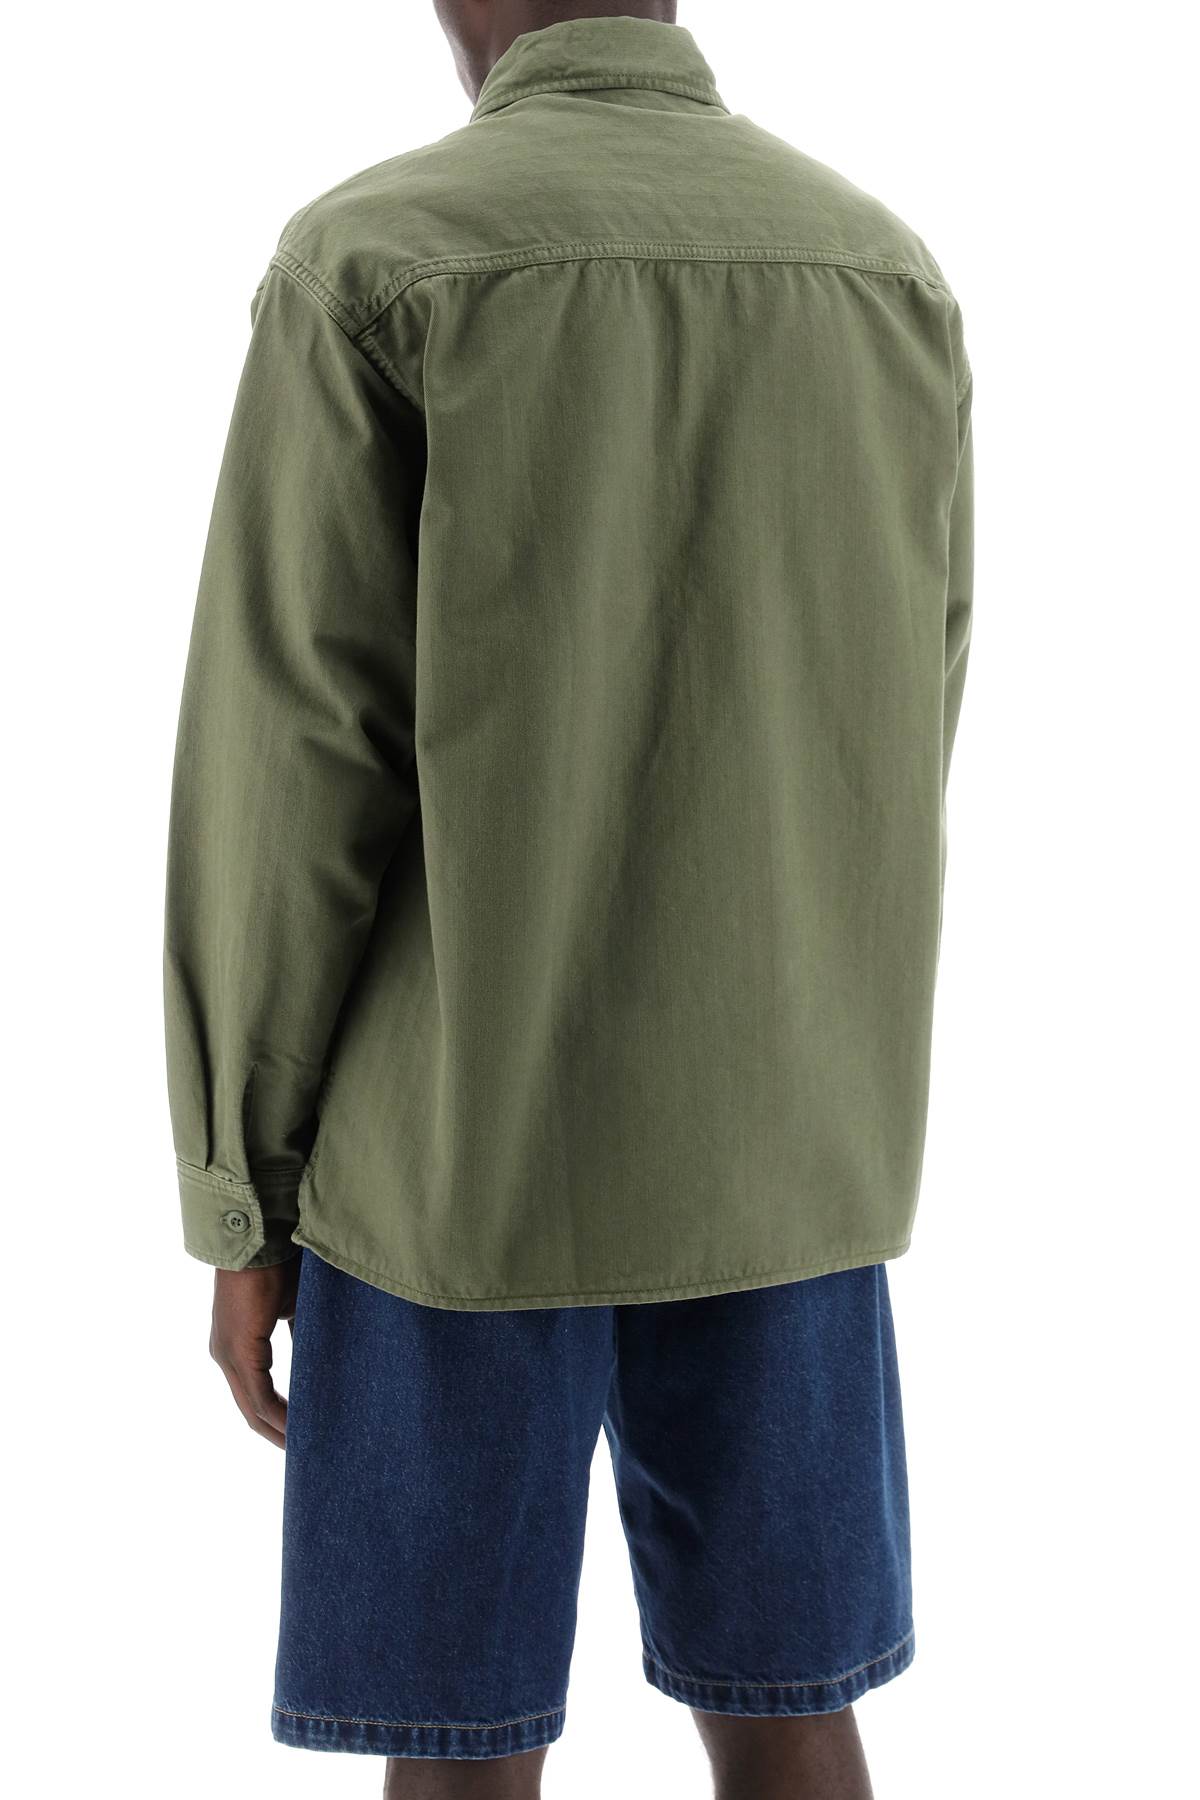 Carhartt wip rainer overshirt shirt-2